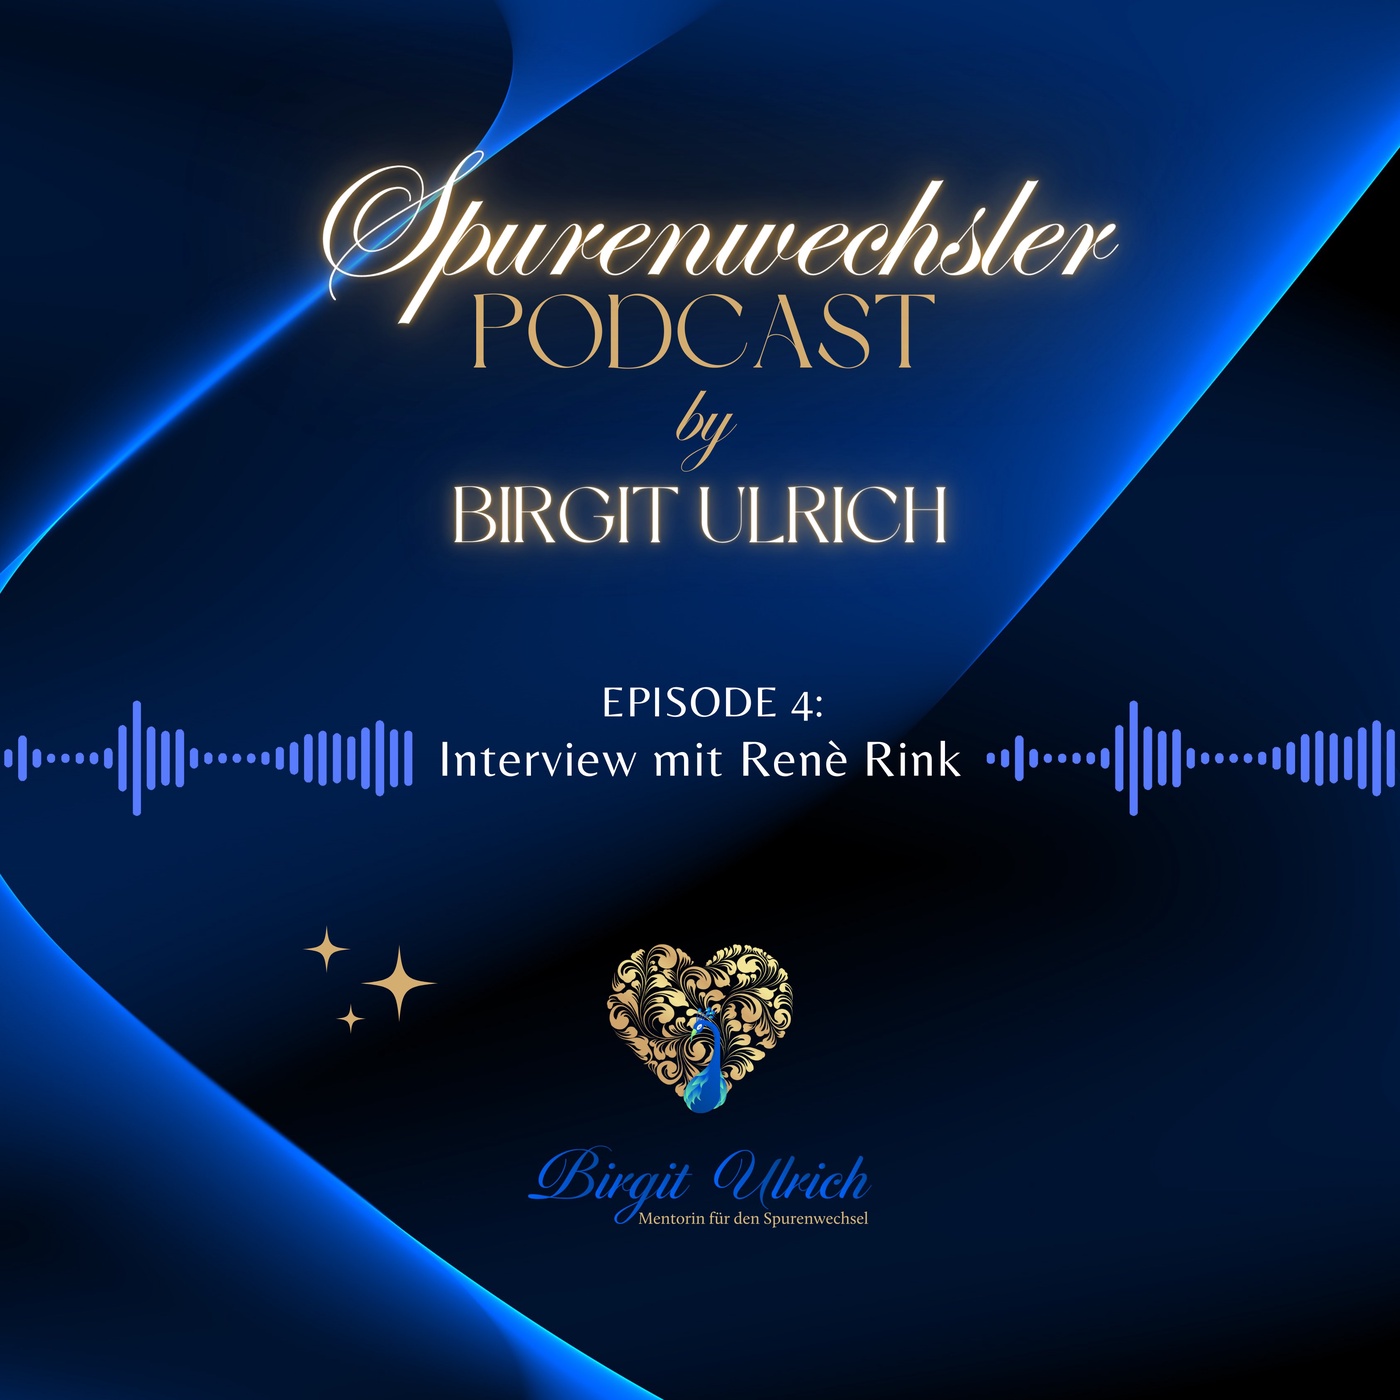 Spurenwechsler Podcast - Episode #4 mit Birgit und Renè Rink